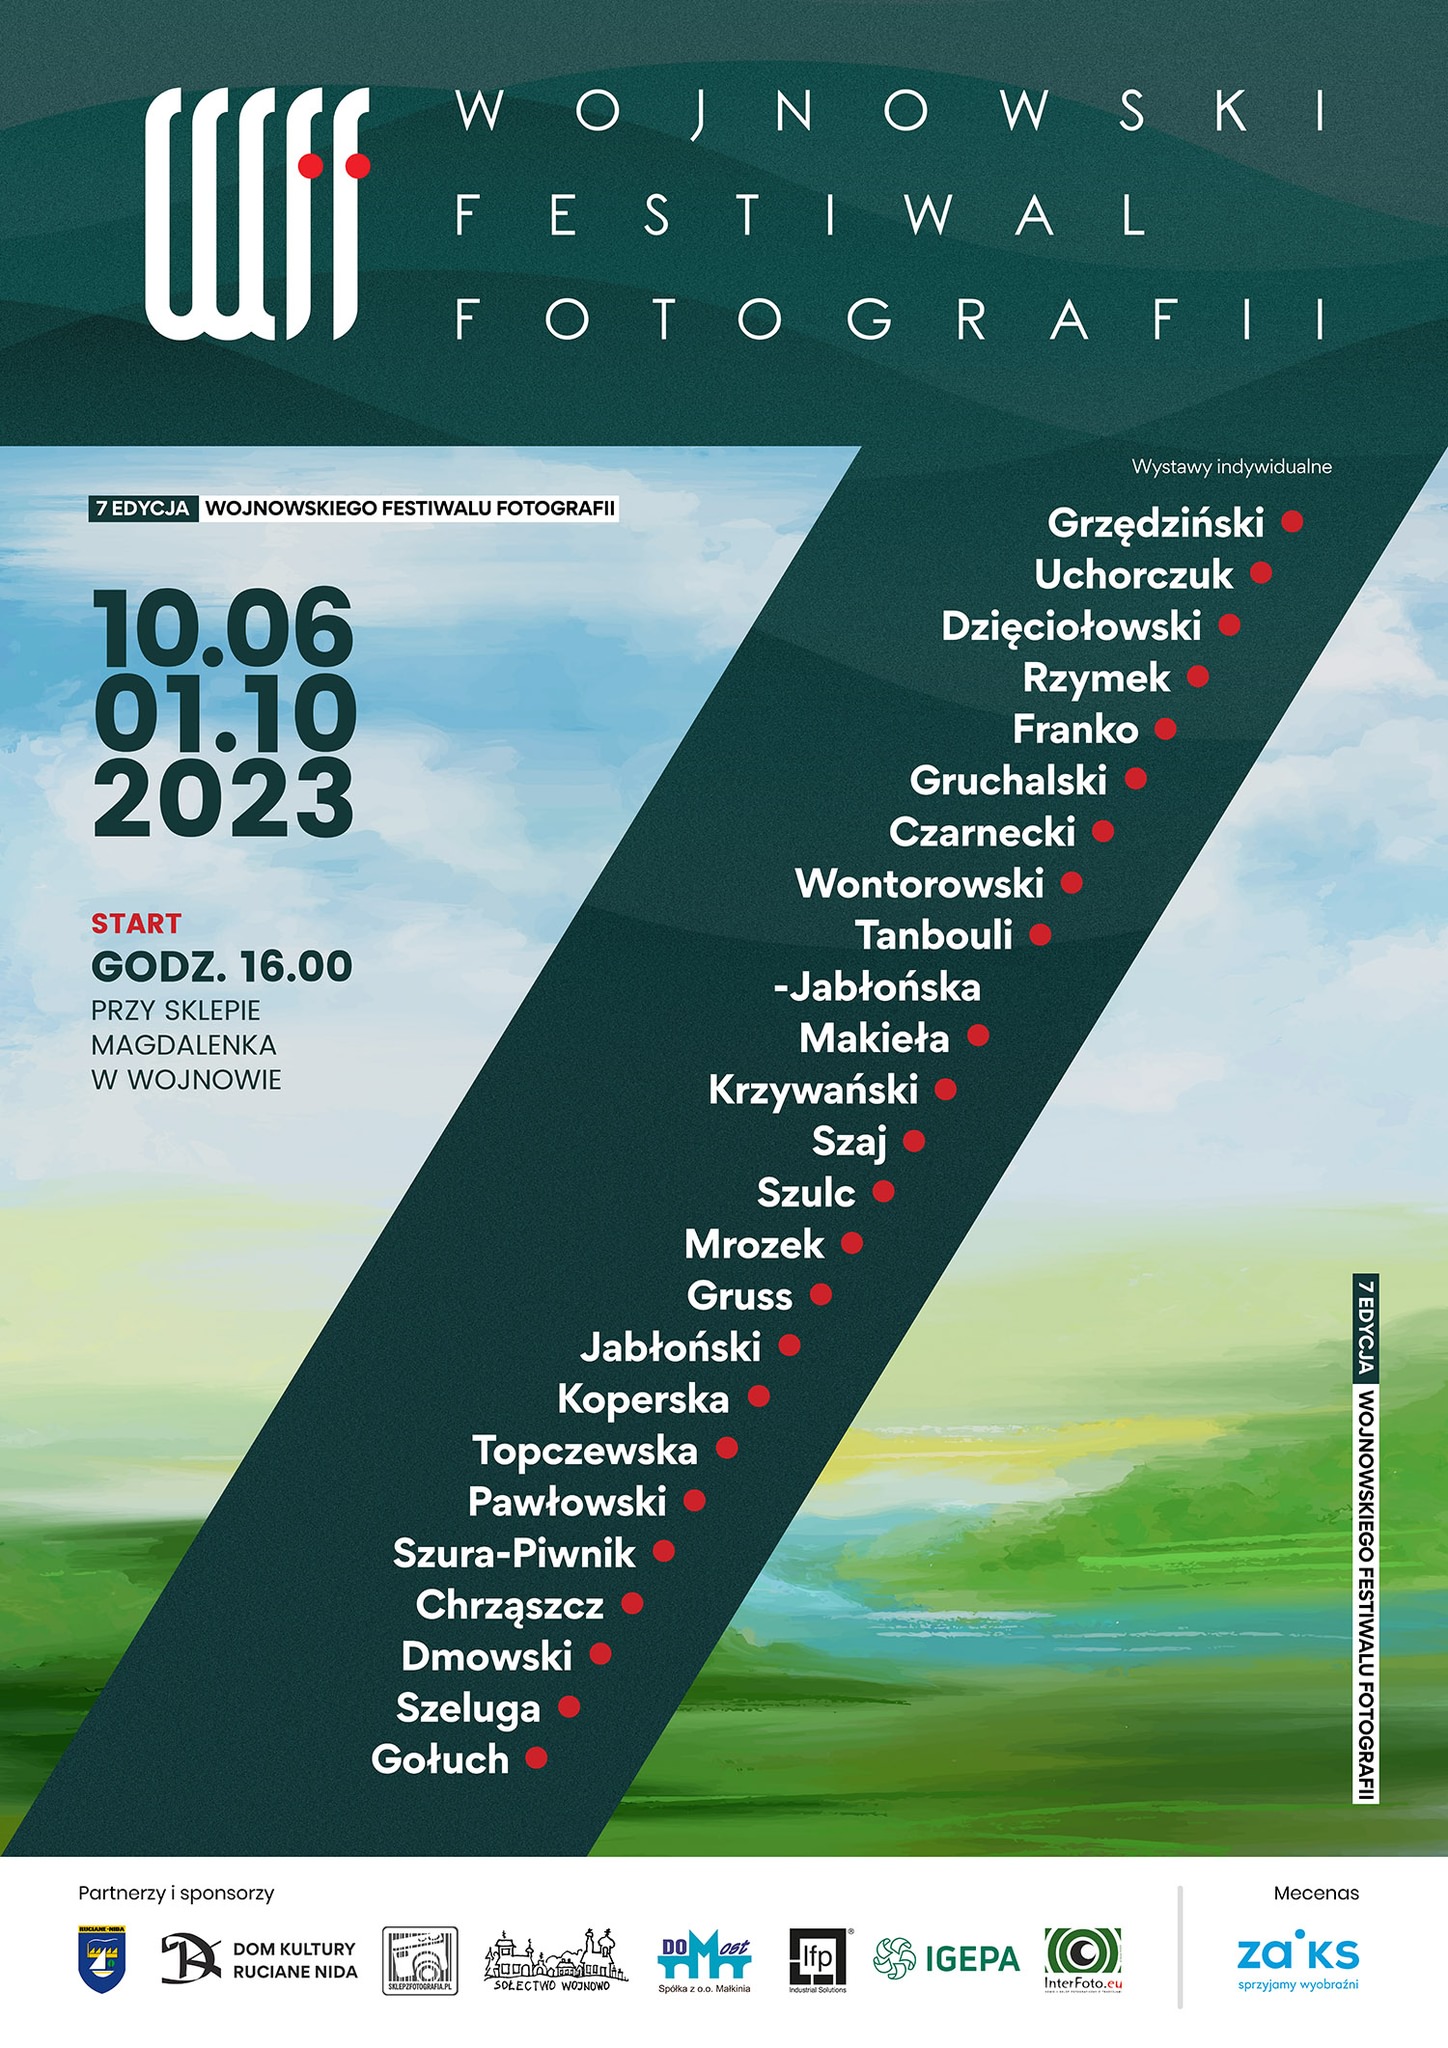 Wojnowski Festiwal Fotografii po raz kolejny na Mazurach